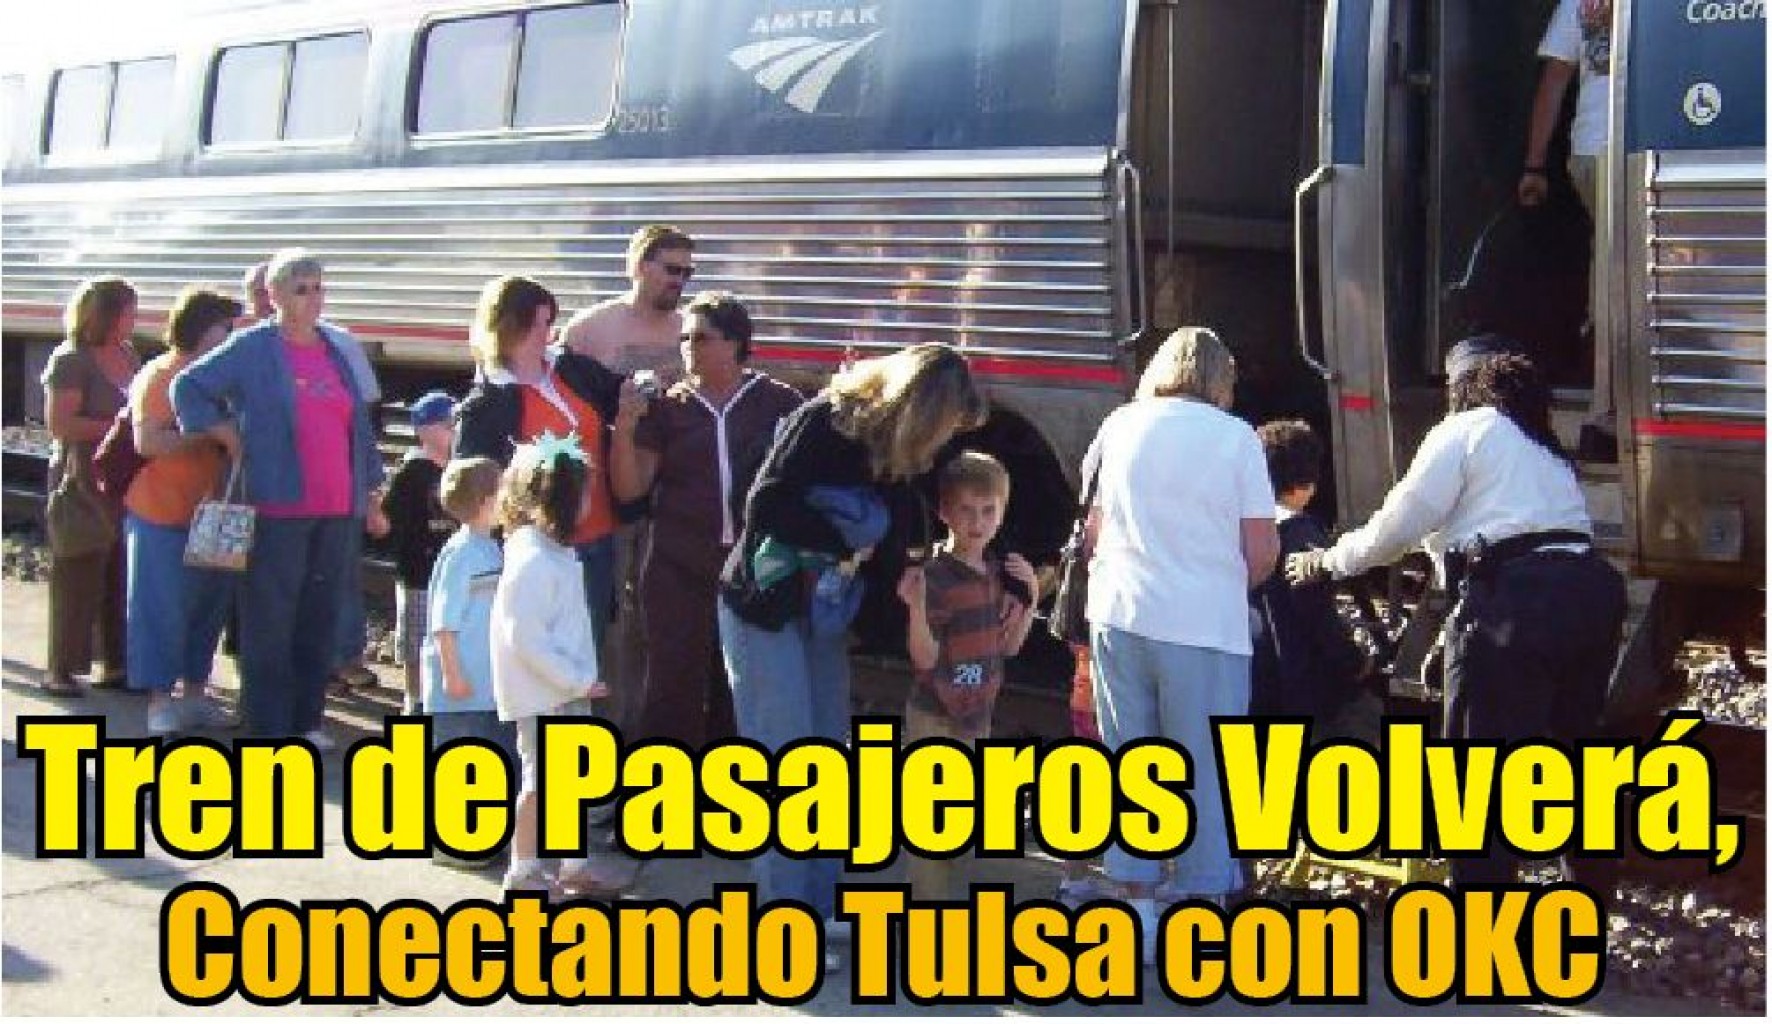 Tren de Pasajeros Volverá, Conectando Tulsa con OKC